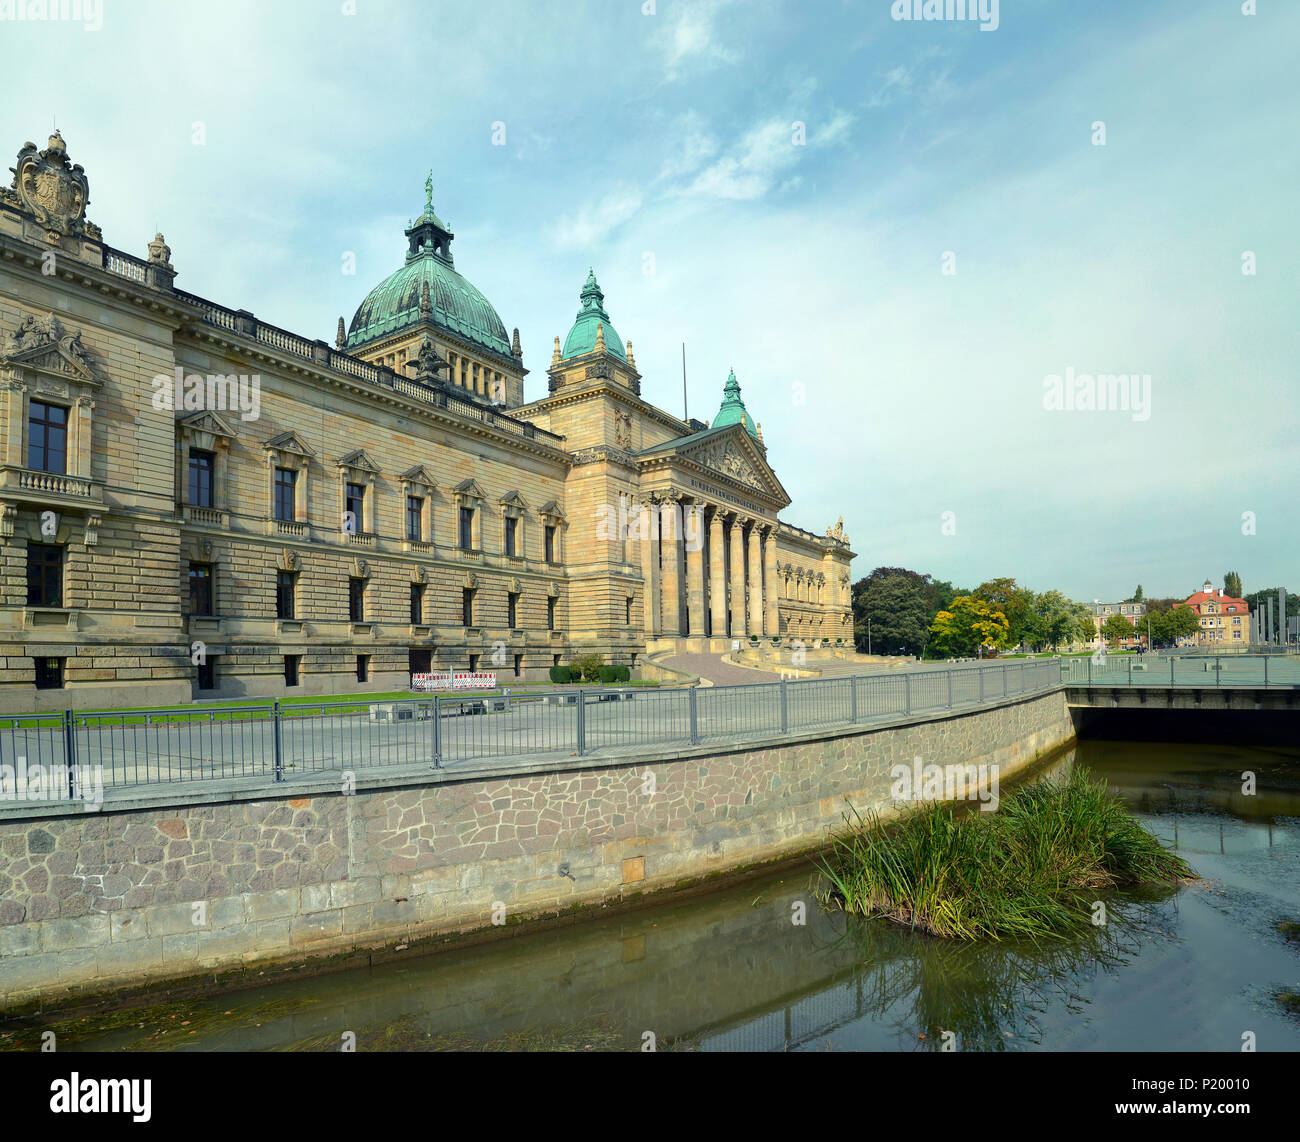 Le tribunal administratif fédéral dans la ville de Leipzig - Allemagne - Saxe - bâtiment historique pour faire du tourisme et visiter Banque D'Images